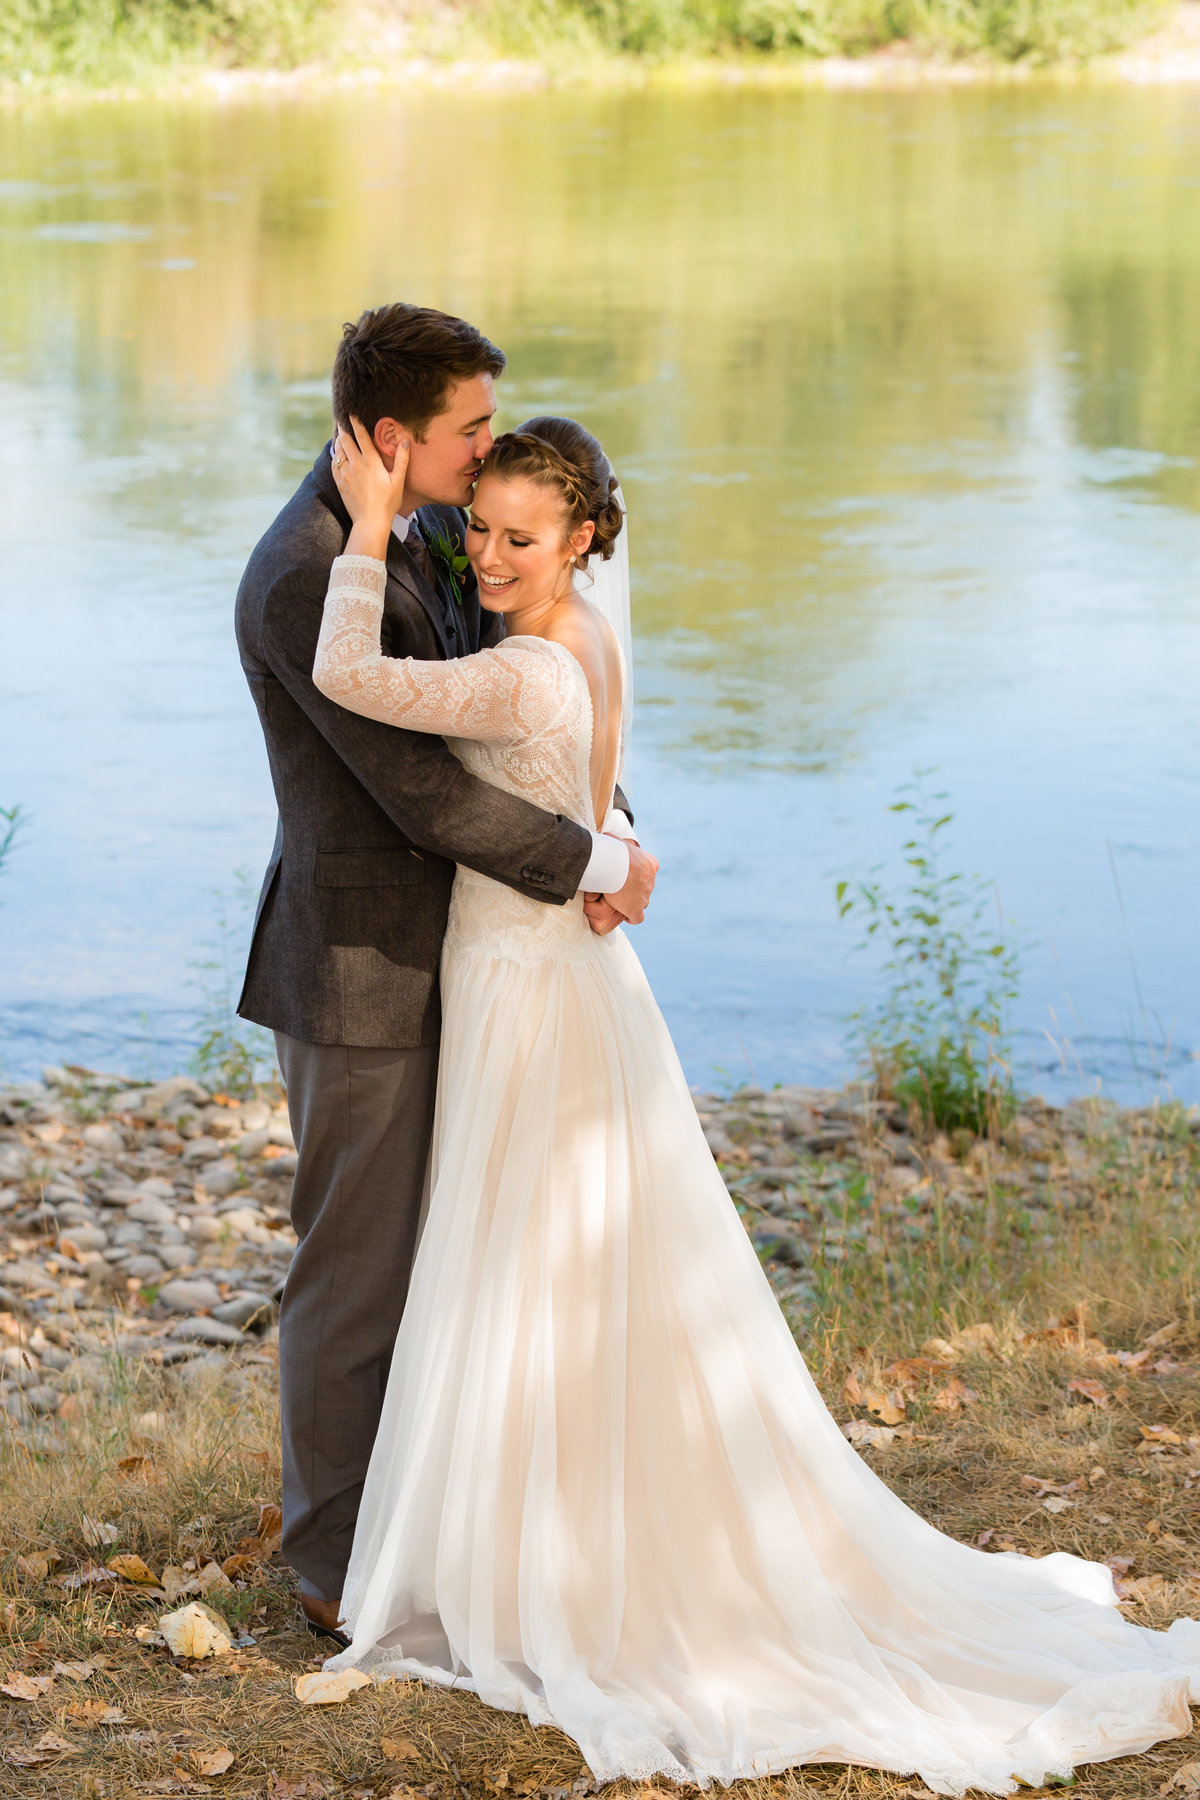 Outdoor Wedding Lake Bride Groom Couple